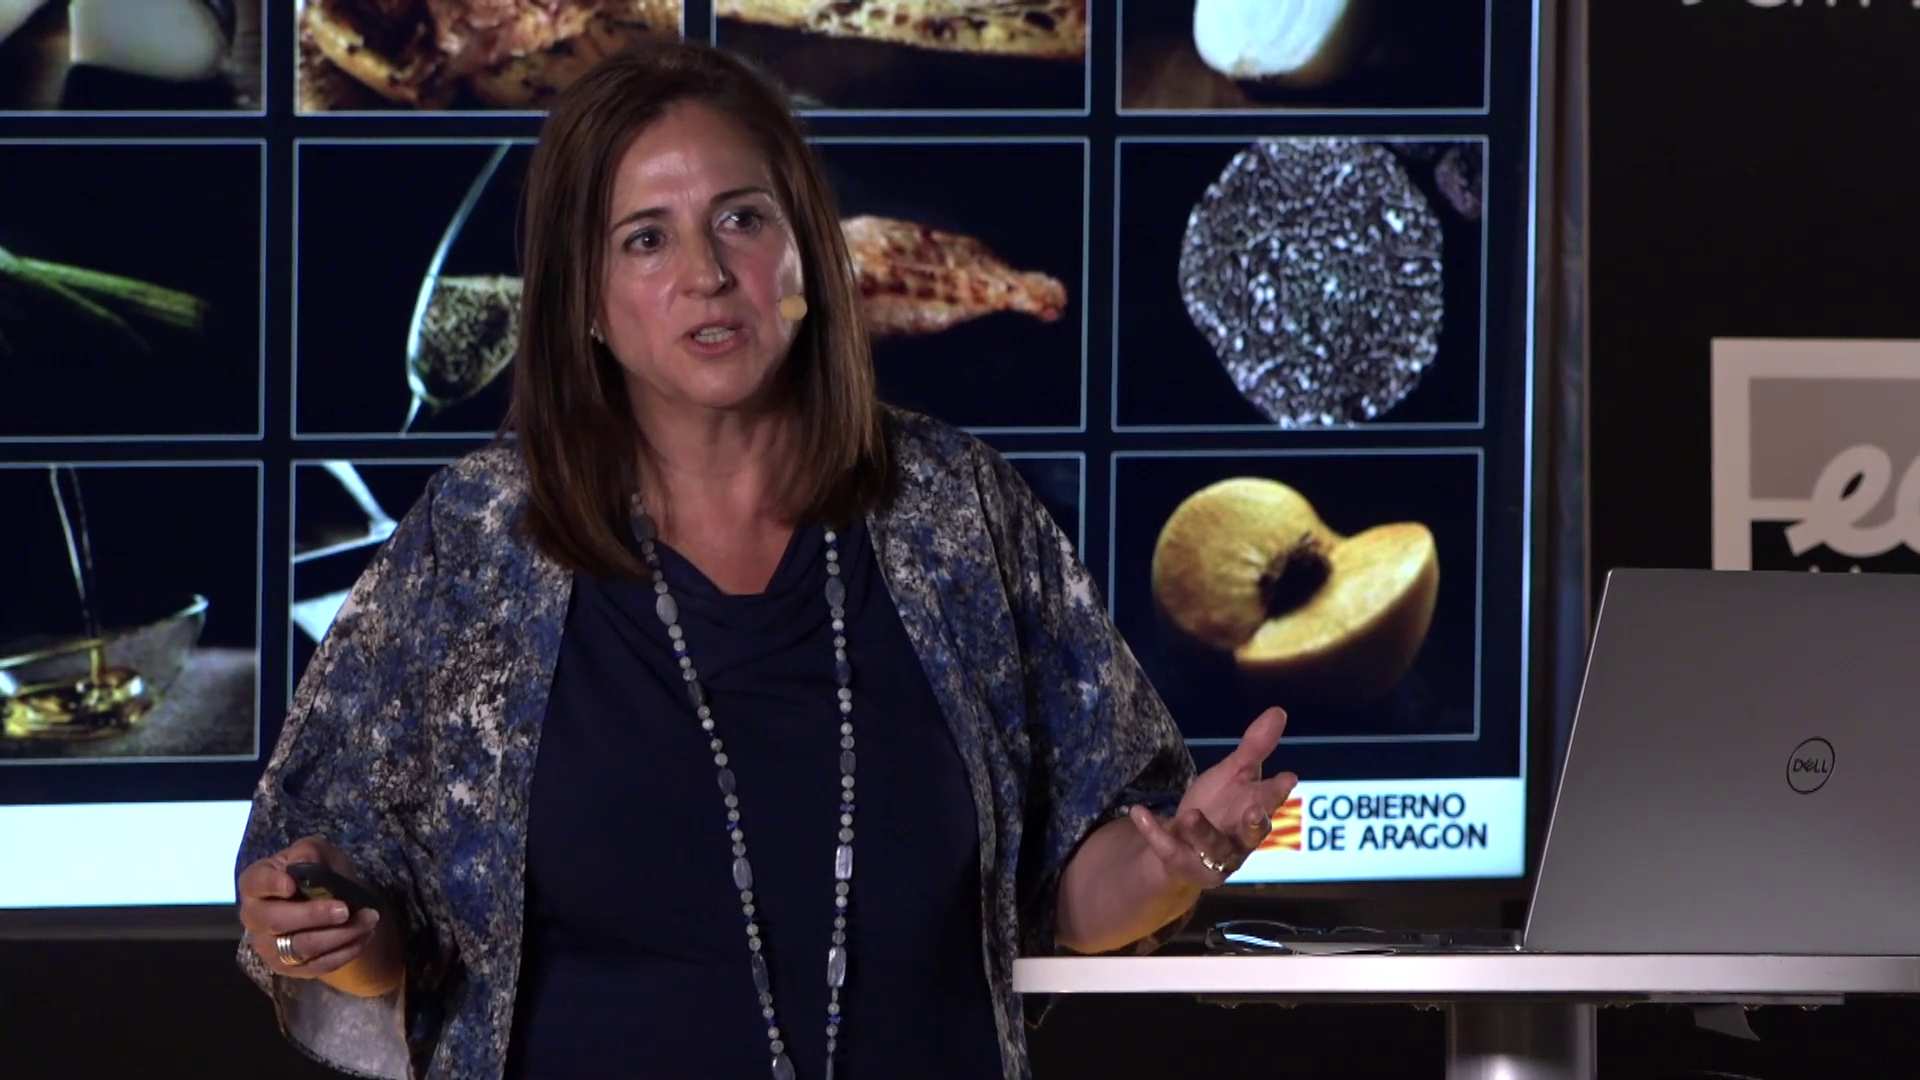 MCDay21 – Cómo lograr un patrocinio de Aragón Alimentos Nobles – Carmen Urbano